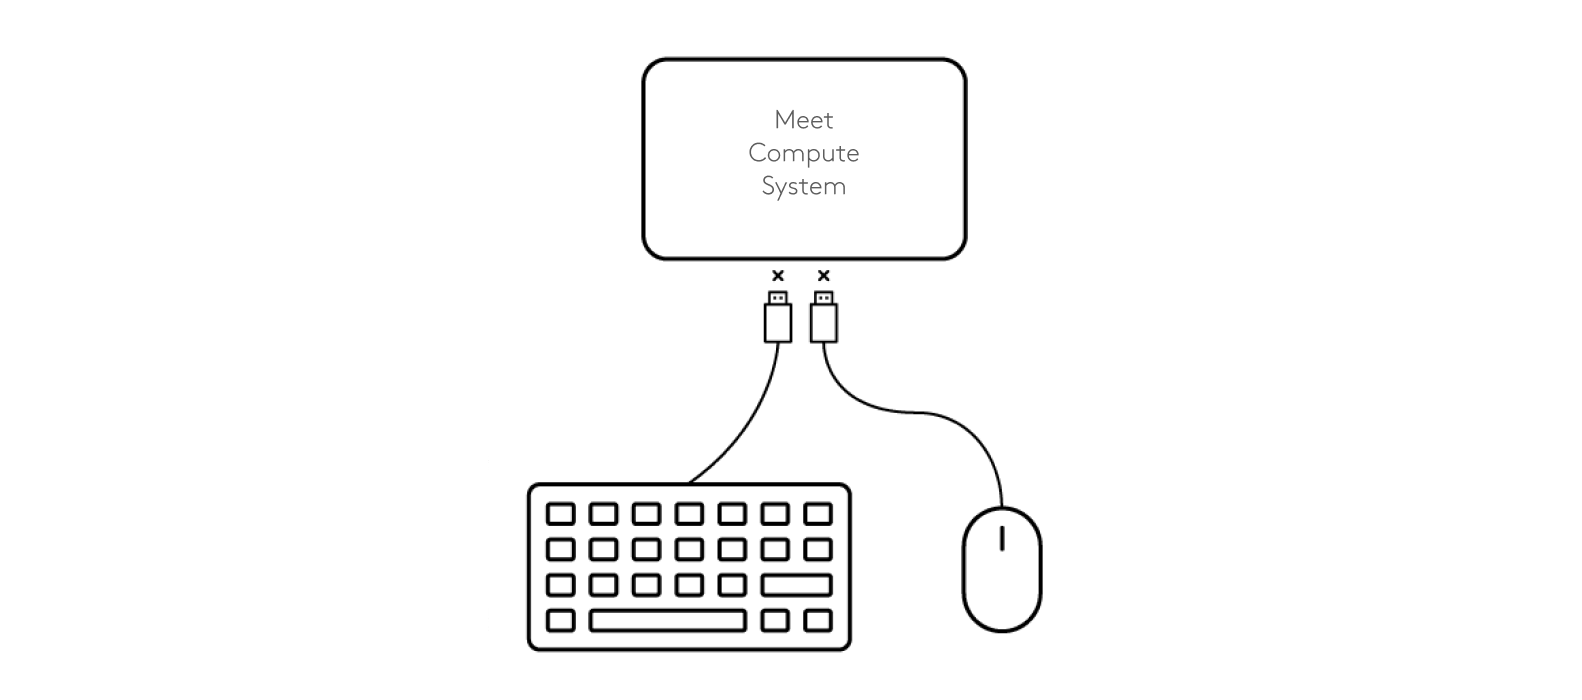 中斷鍵盤和滑鼠與會議運算系統連接的示意圖